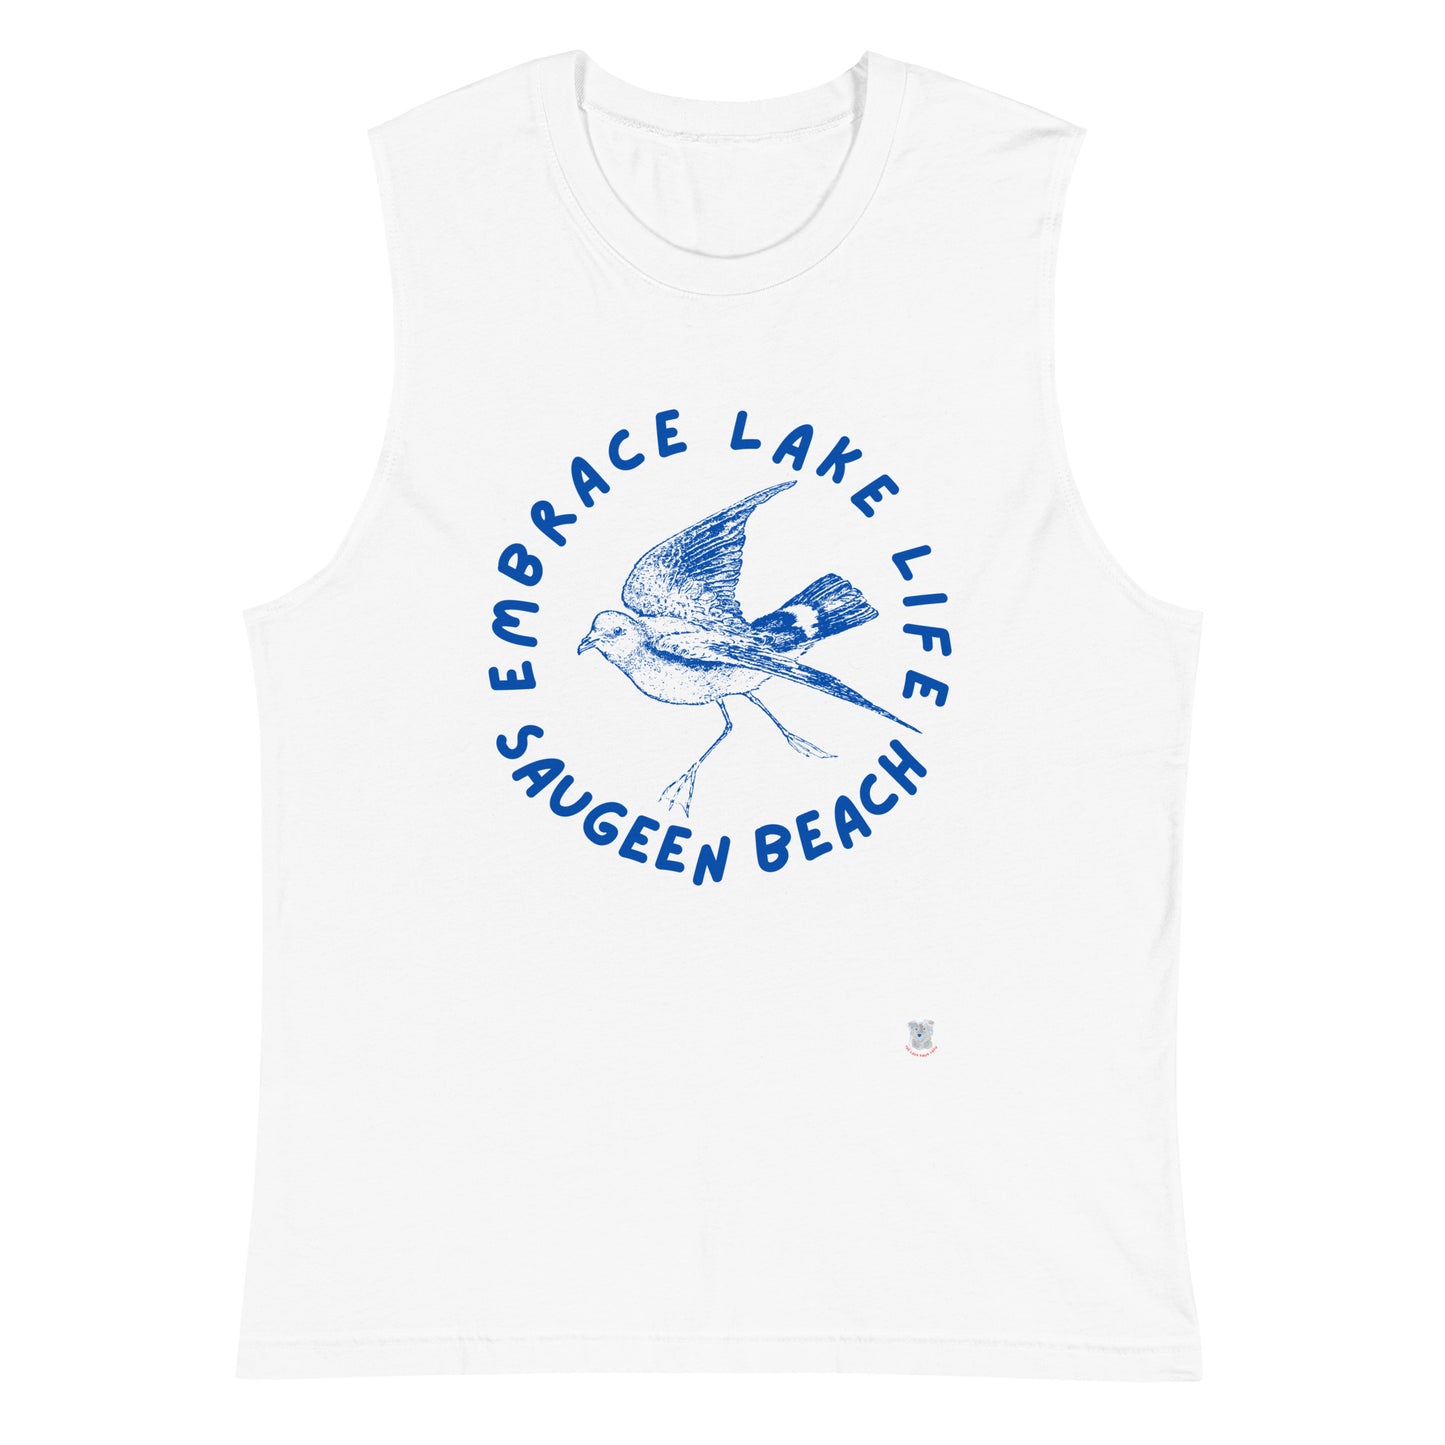 Saugeen Beach Ontario Muscle Shirt